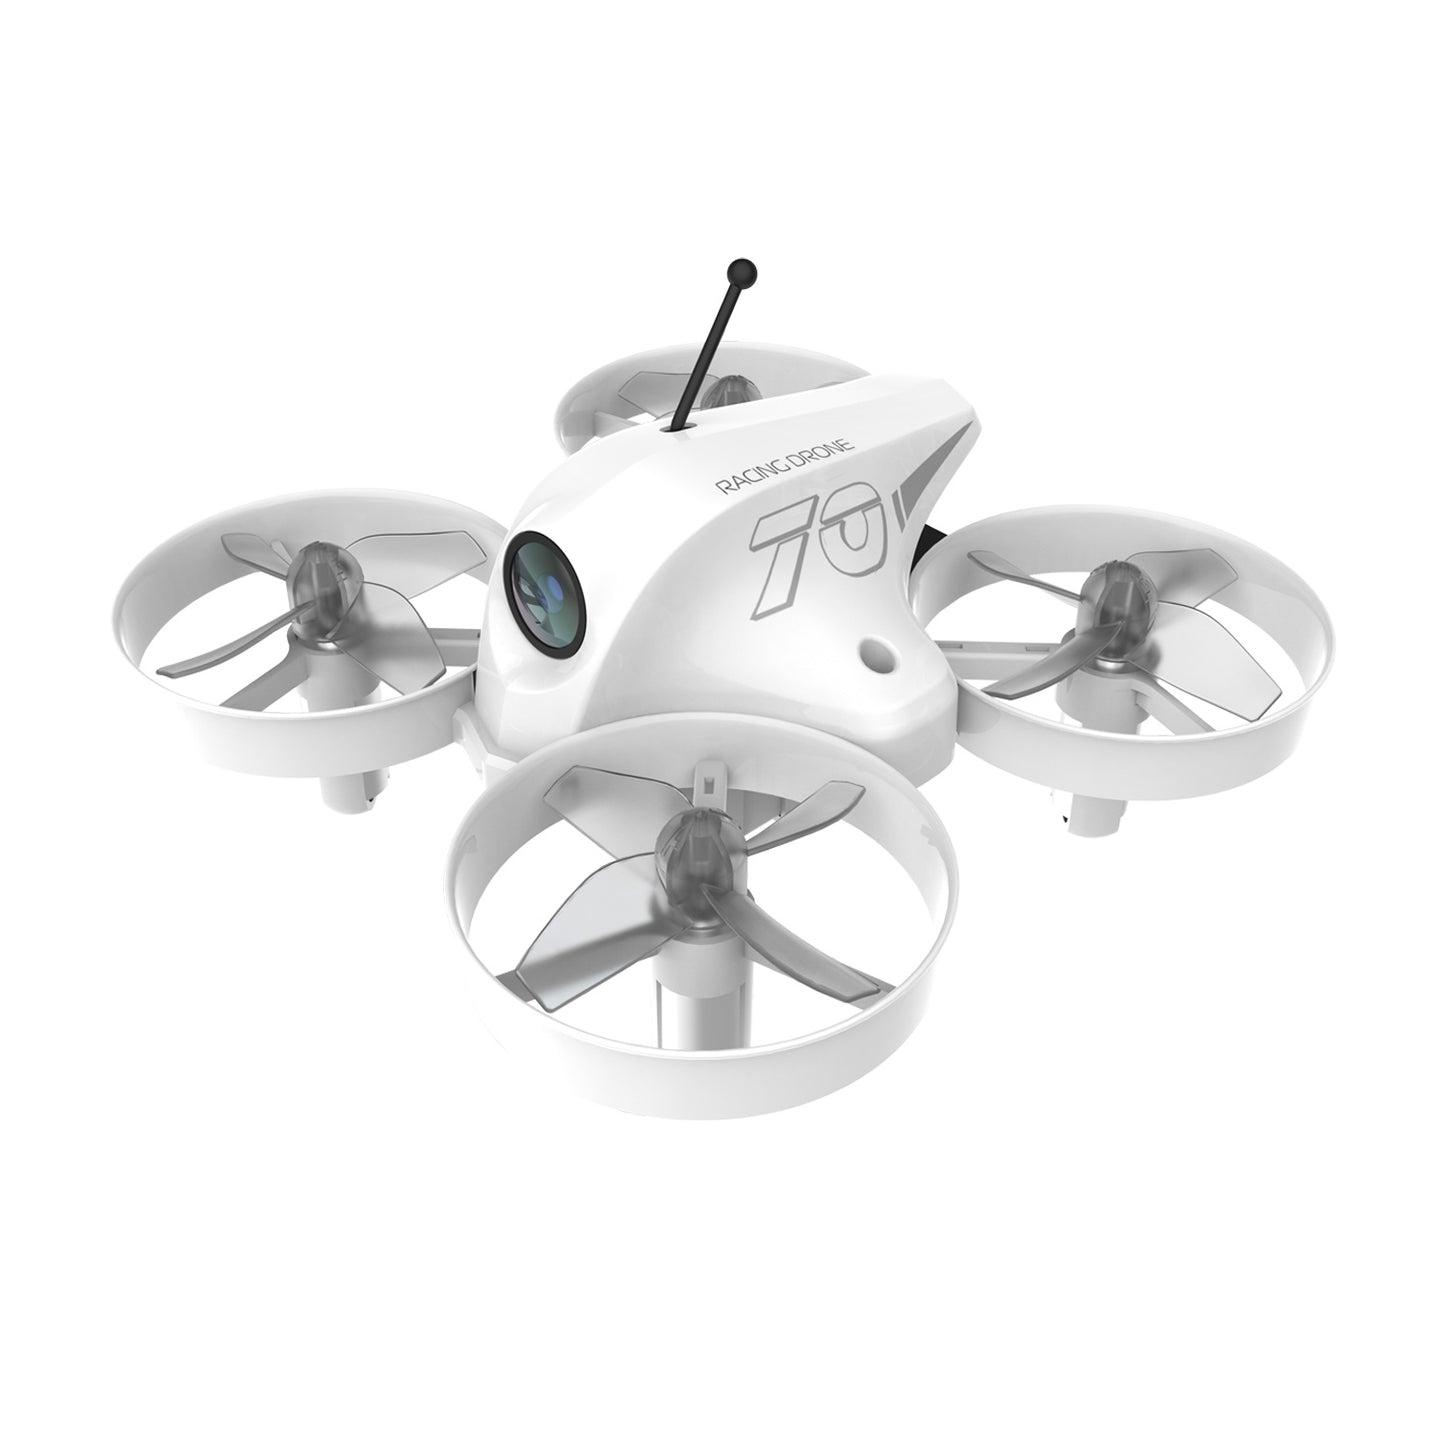 APEX VR70 FPV Drone , Single drone, No Remote